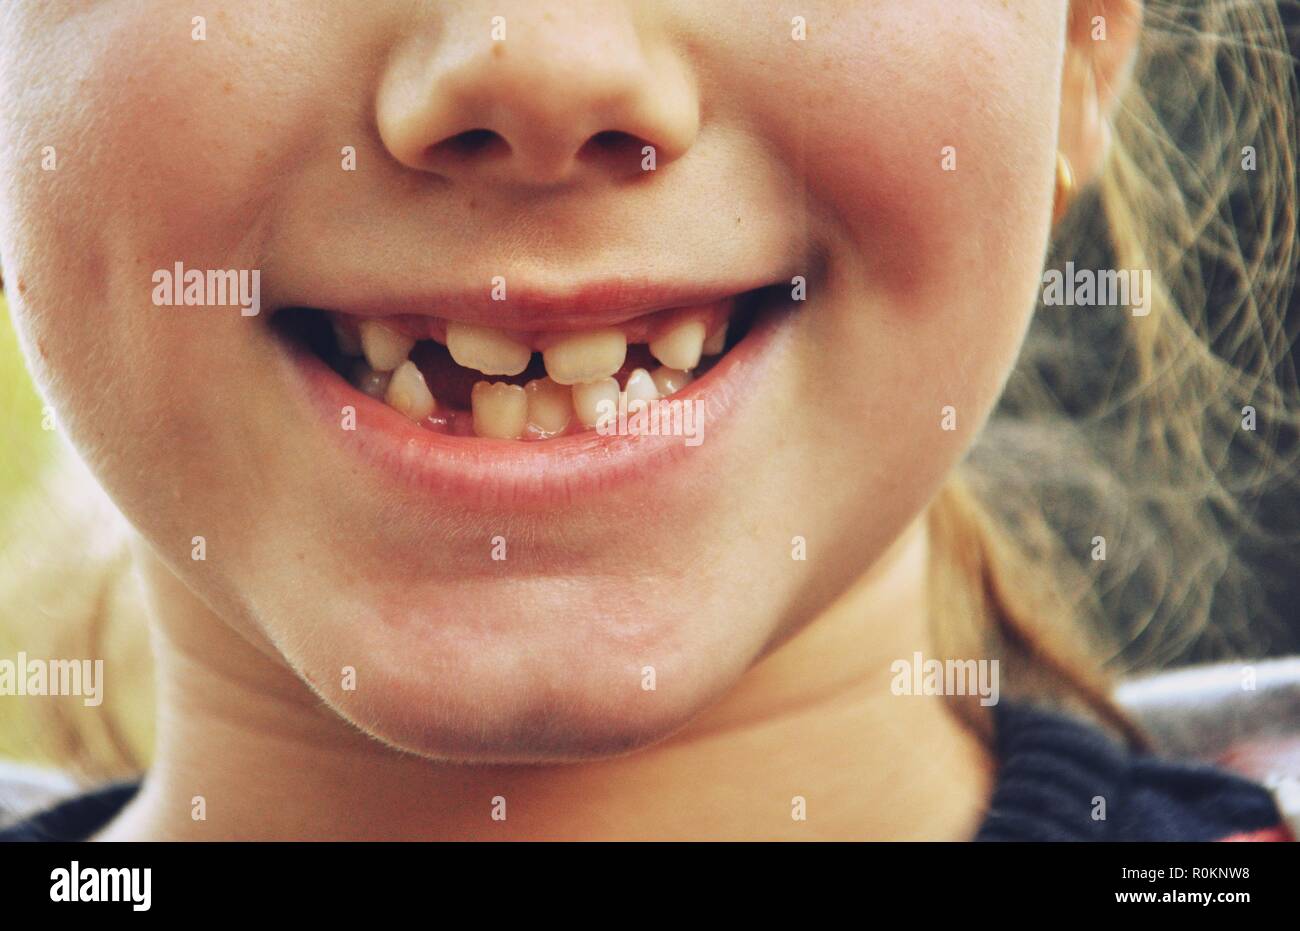 Gros plan d'une bouche d'un caucasien blanc 9 ans enfant, jeune fille, avec dents rigide Banque D'Images